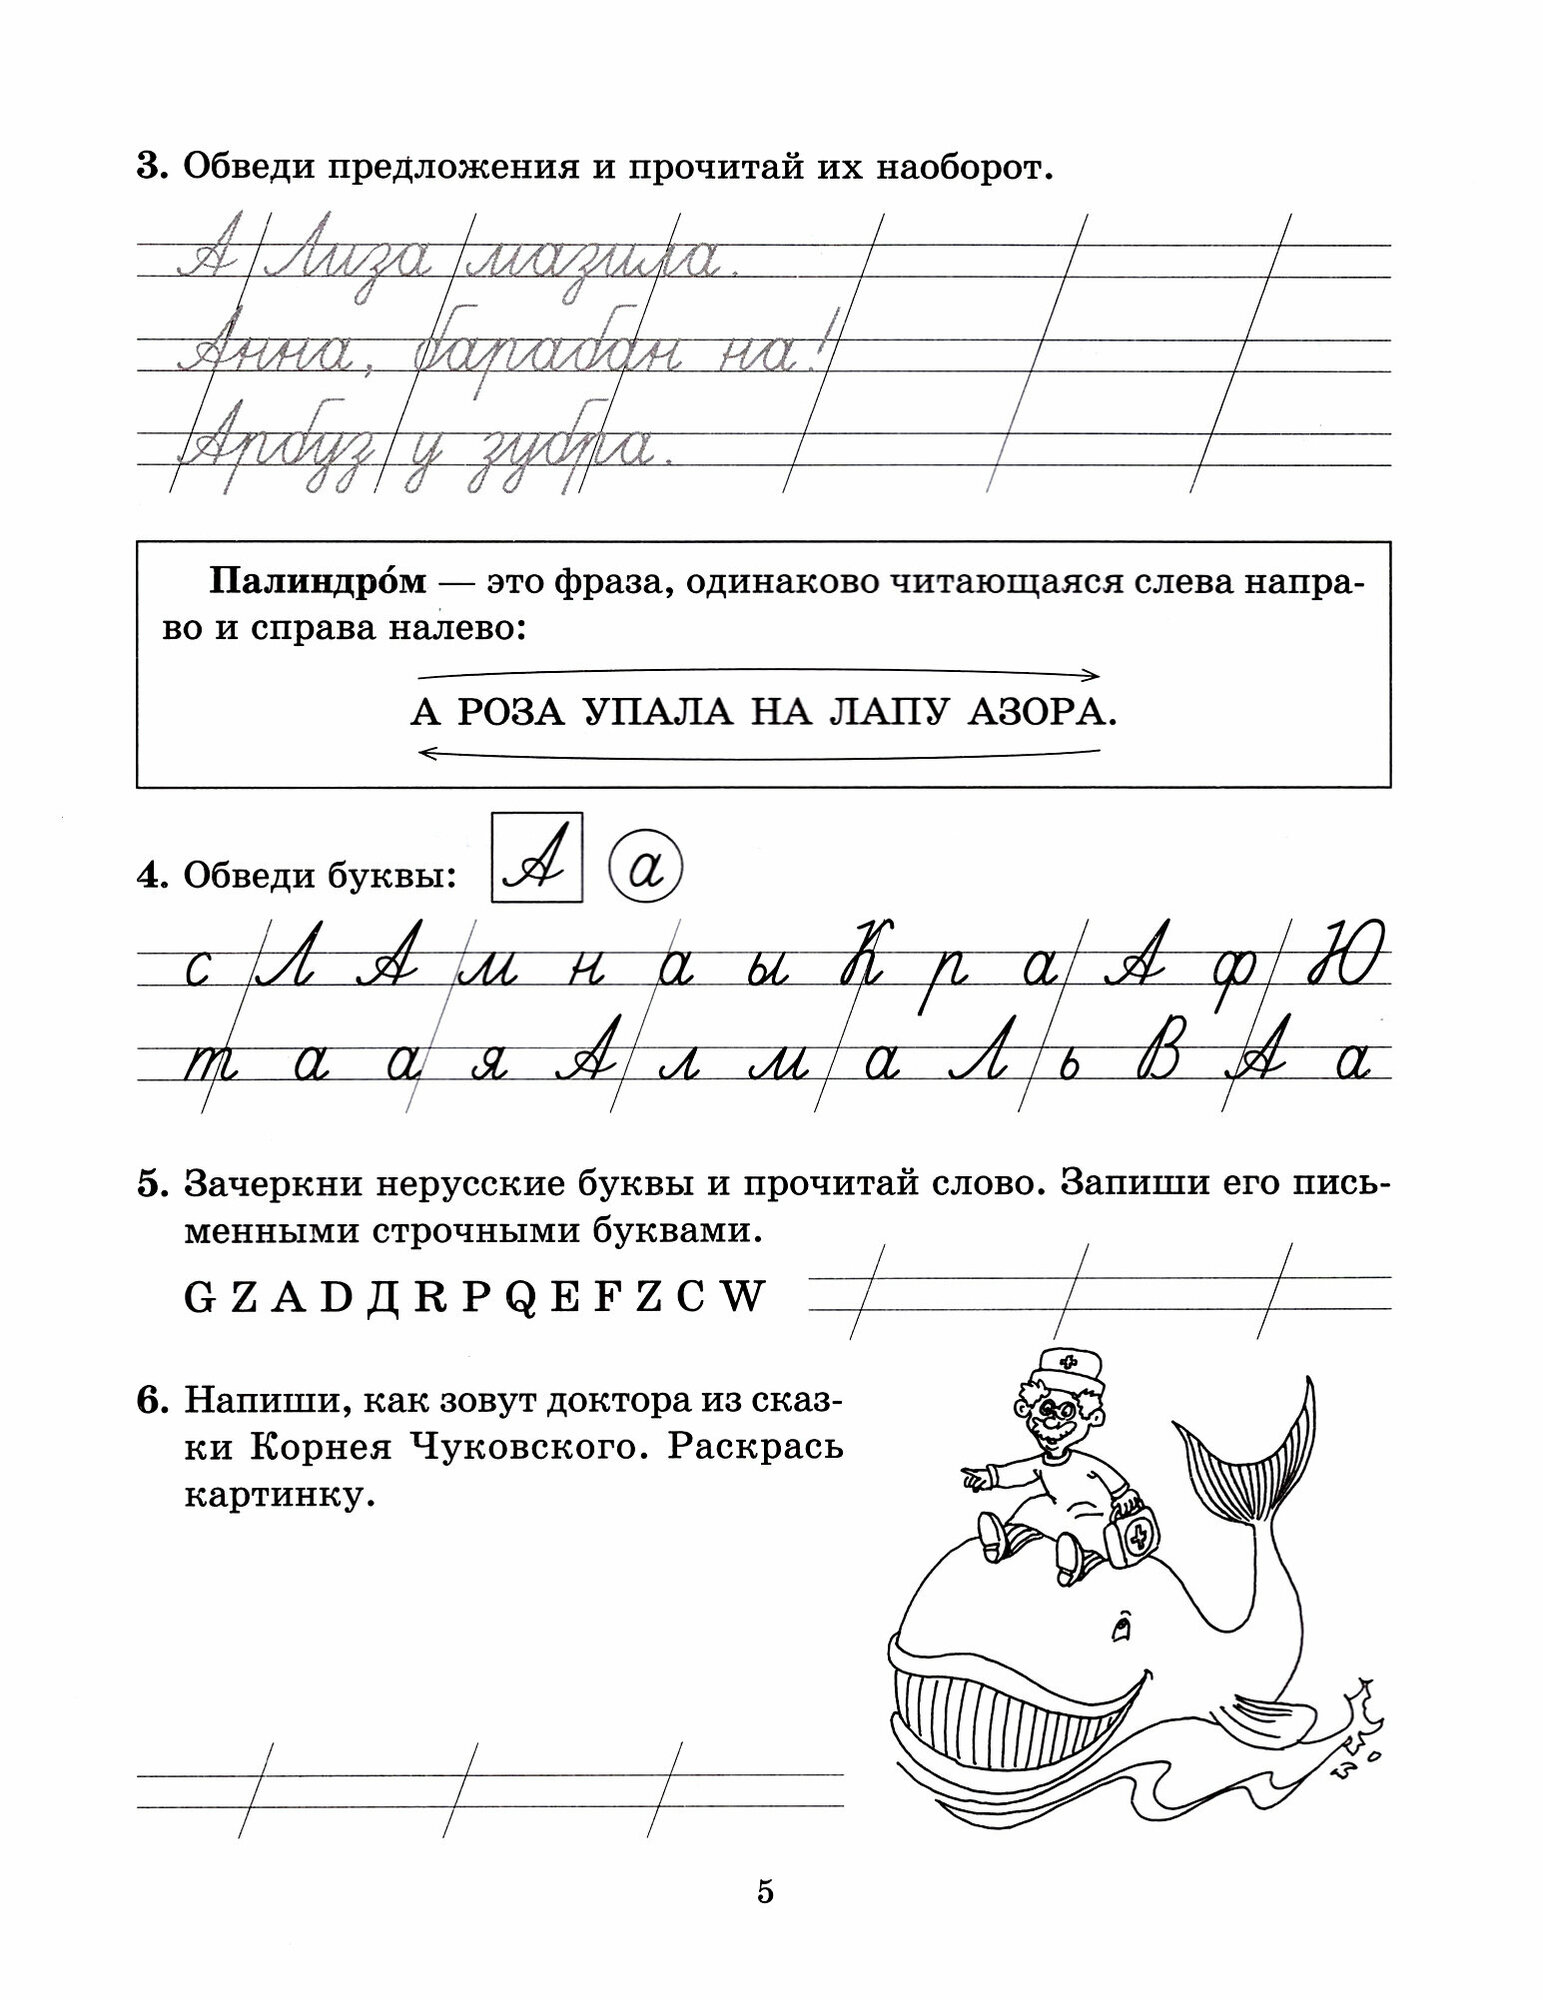 Задания и упражнения на отработку правил русского языка и для исправления почерка. 1-4 классы - фото №4